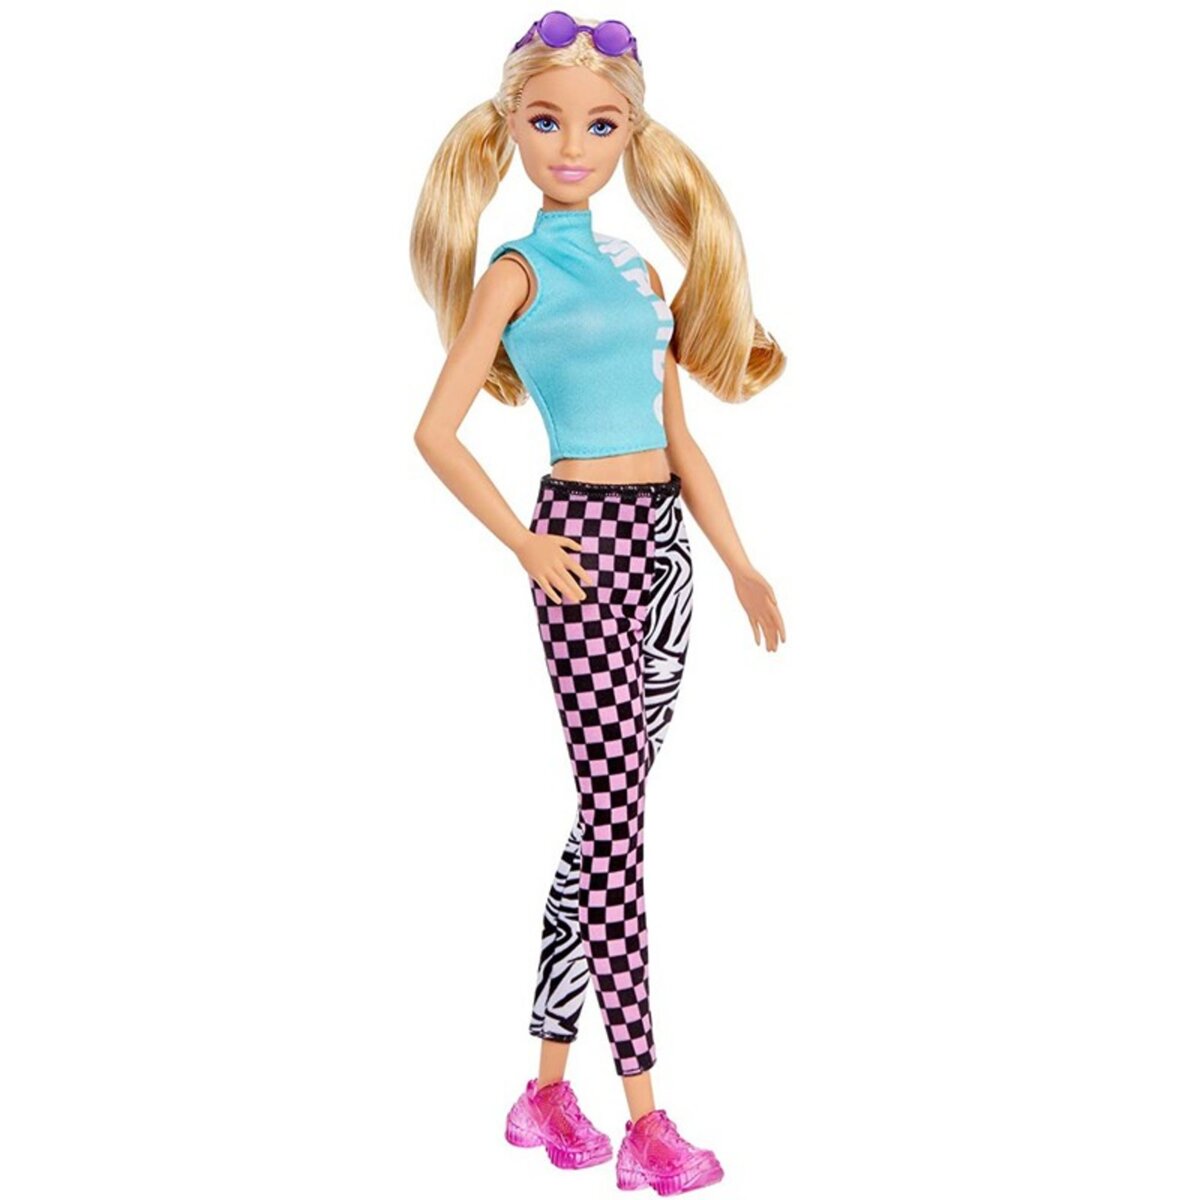 BARBIE Poupée Barbie Fashionista 30 cm